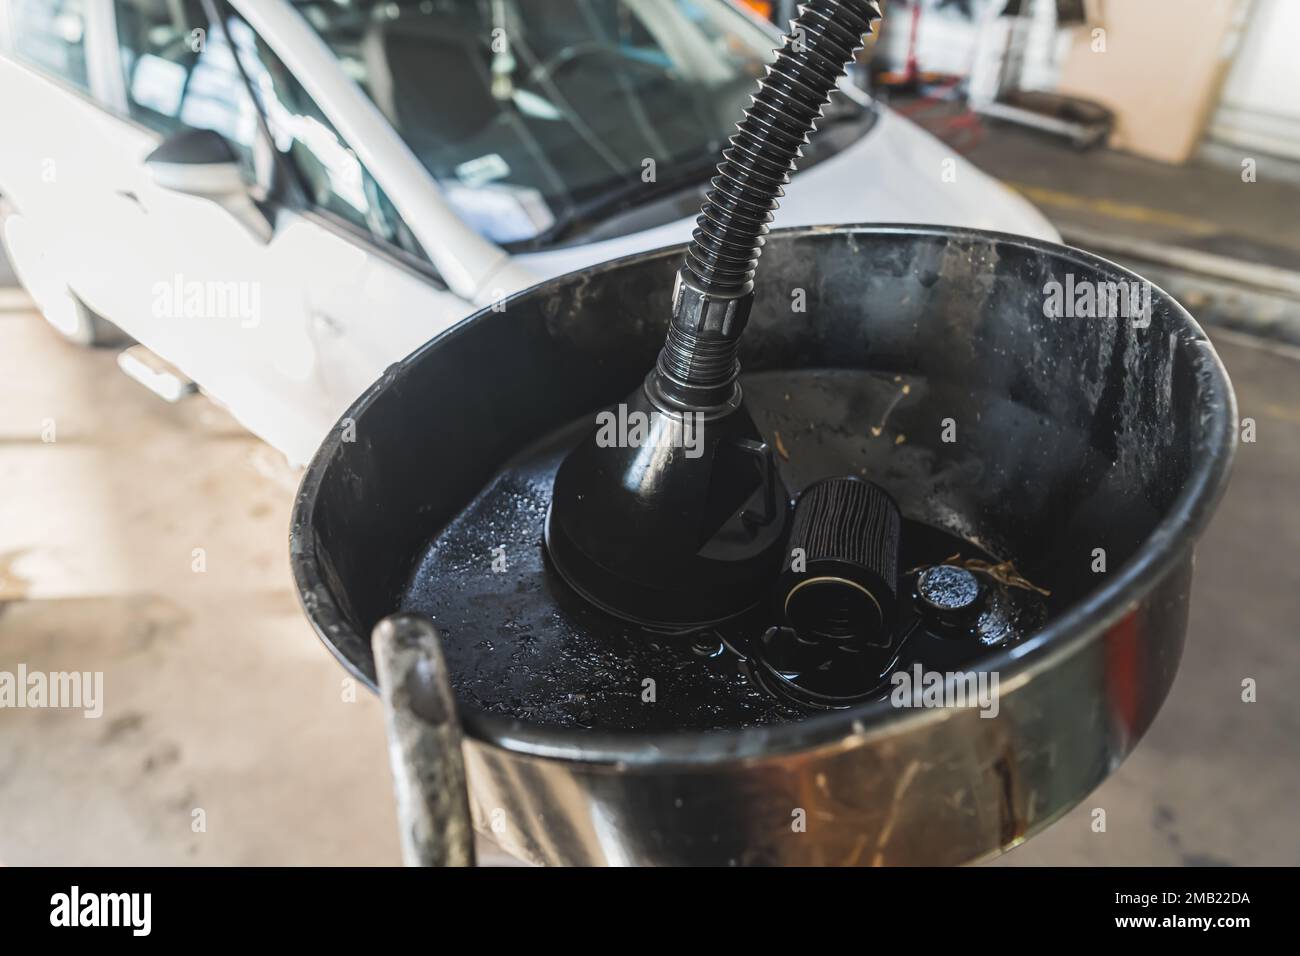 Un filtre à huile moteur et un conteneur d'huile récemment remplacés dans un atelier de réparation automobile. Photo de haute qualité Banque D'Images